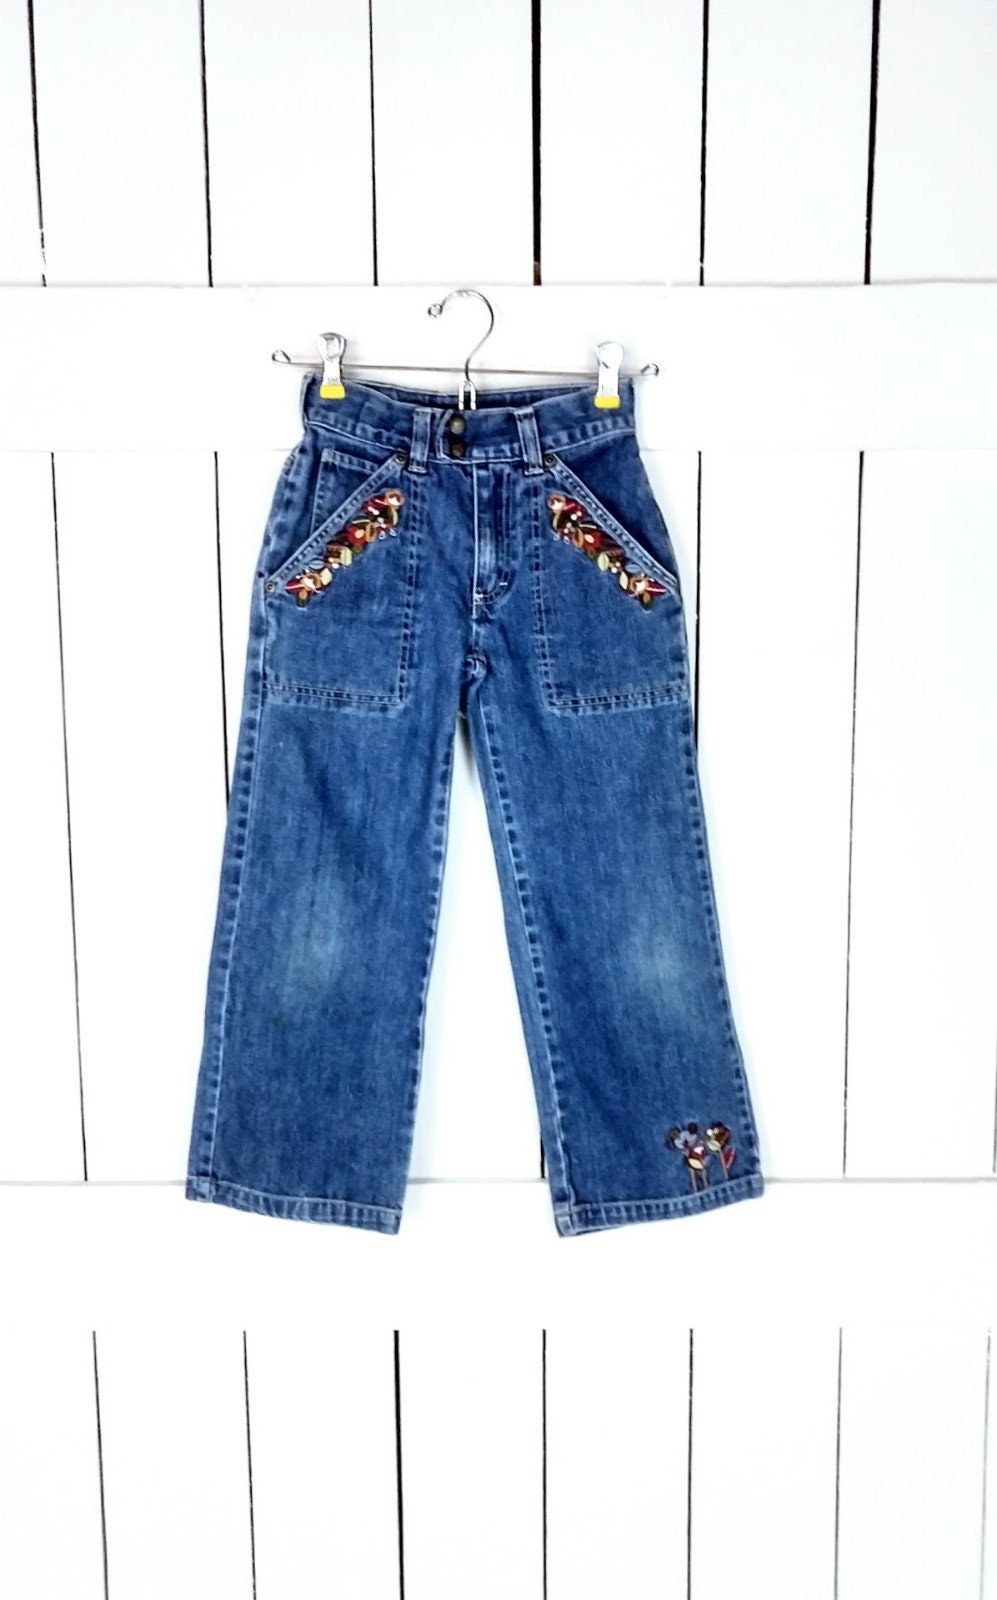 Kinder/Mädchen/Kinder Locker Breites Bein Geblümt Bestickt Blaue Jeans/Osh Kosk Bgosh/Boho Jeans/7 von GreenCanyonTradingCo